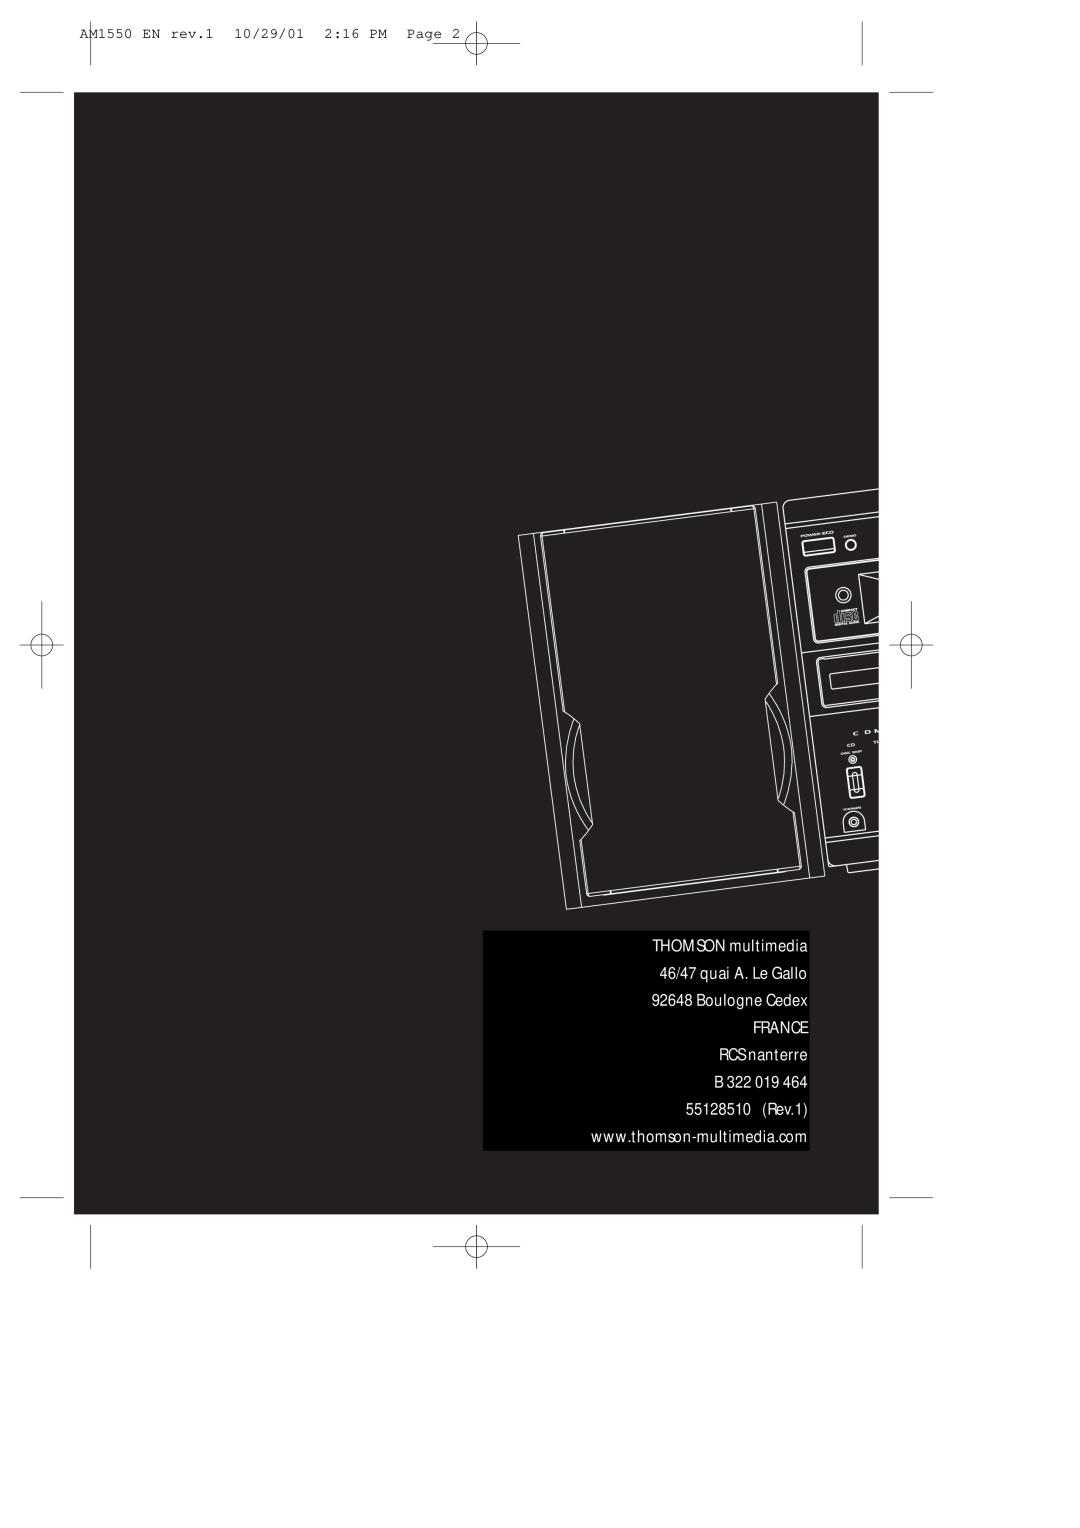 Technicolor - Thomson manual FRANCE RCS nanterre B, AM1550 EN rev.1 10/29/01 2 16 PM Page 